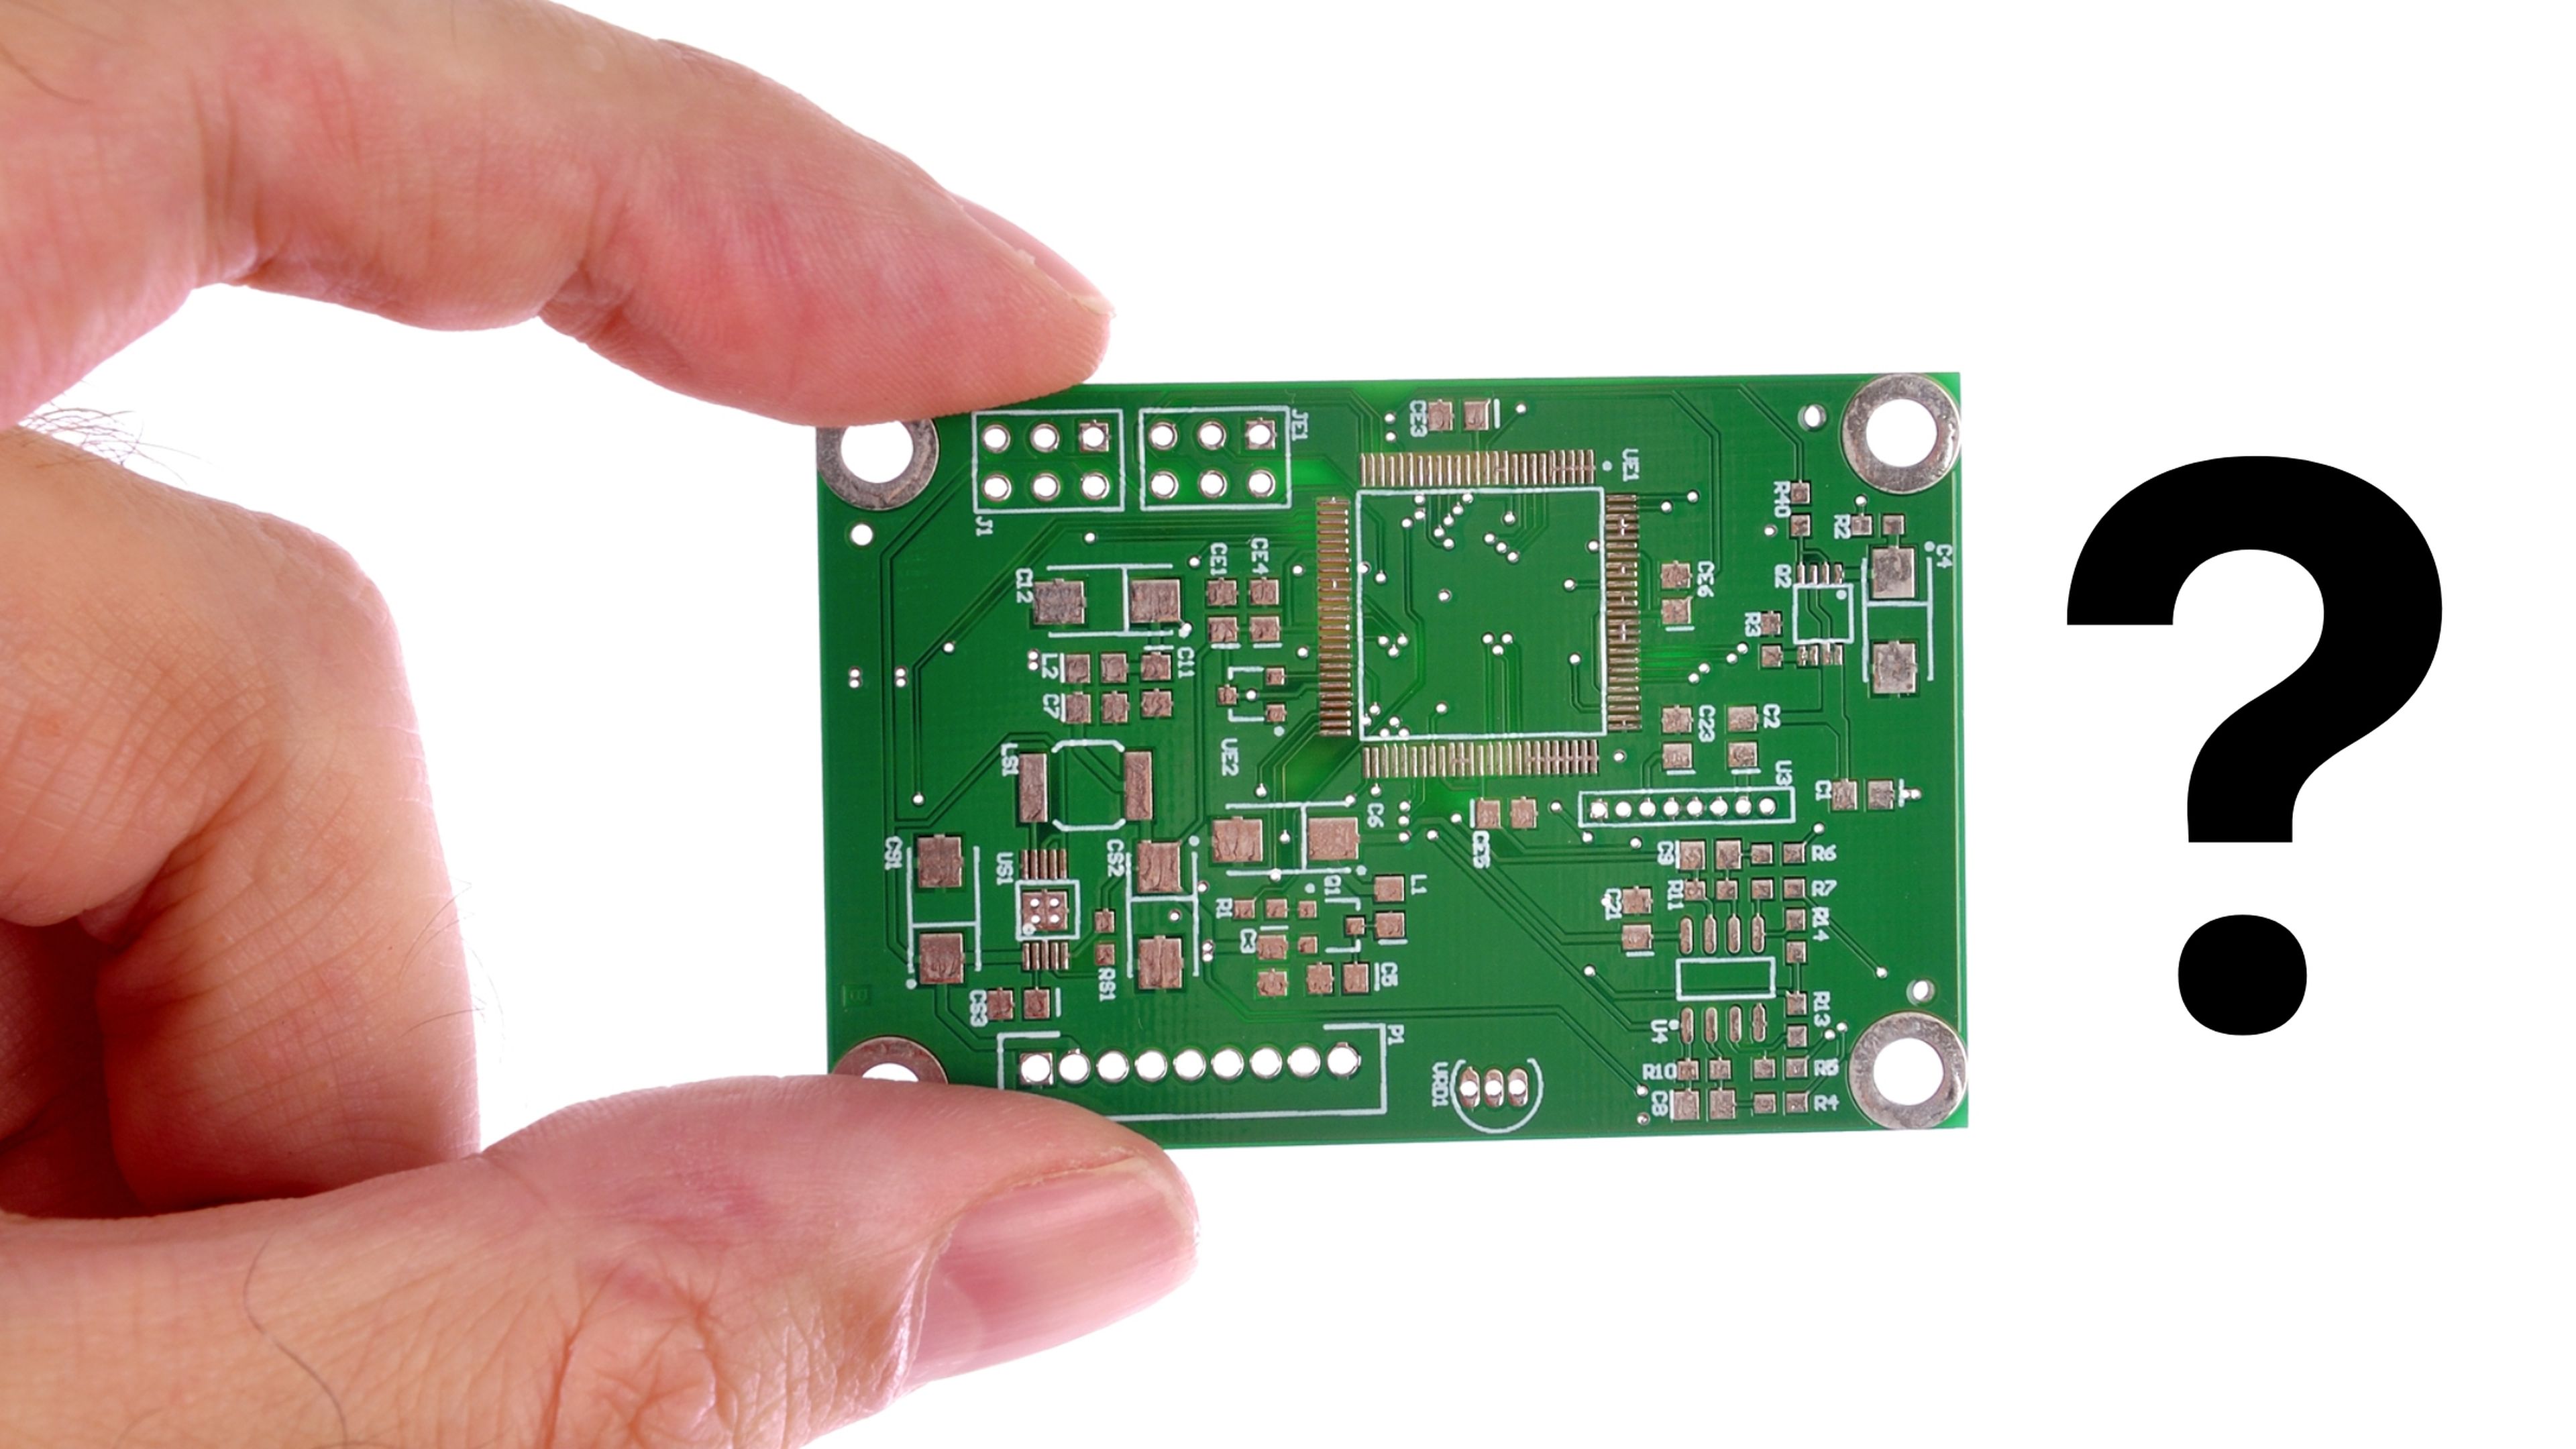 ¿Por qué la mayoría de las placas de circuitos impresos son de color verde?